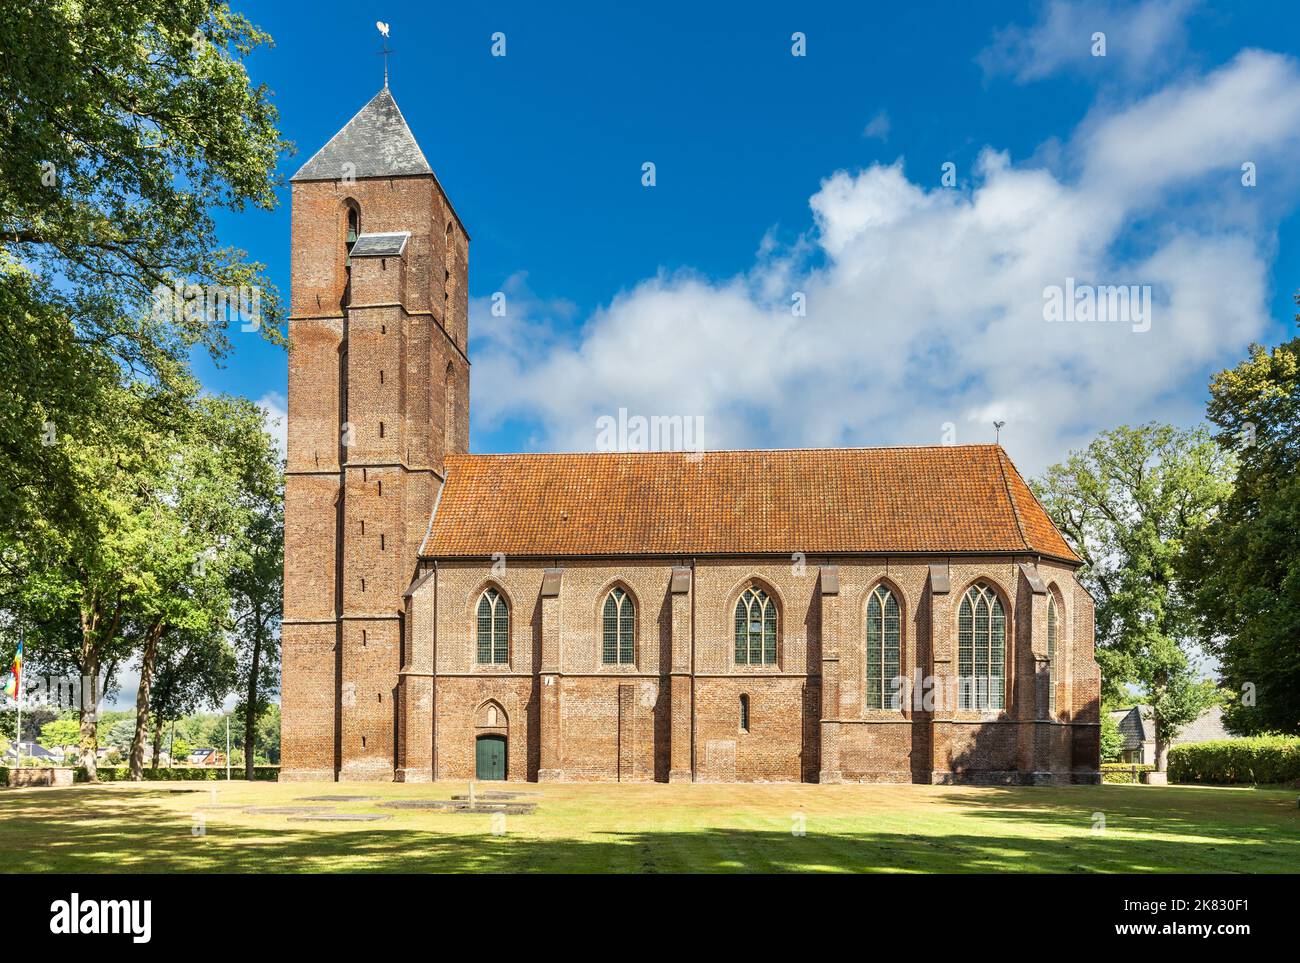 Sommerlandschaft mit historischem Wahrzeichen die Clemenskerk außerhalb des Dorfzentrums von Havelte in der niederländischen Provinz Drenthe, umgeben von alter Eiche Stockfoto